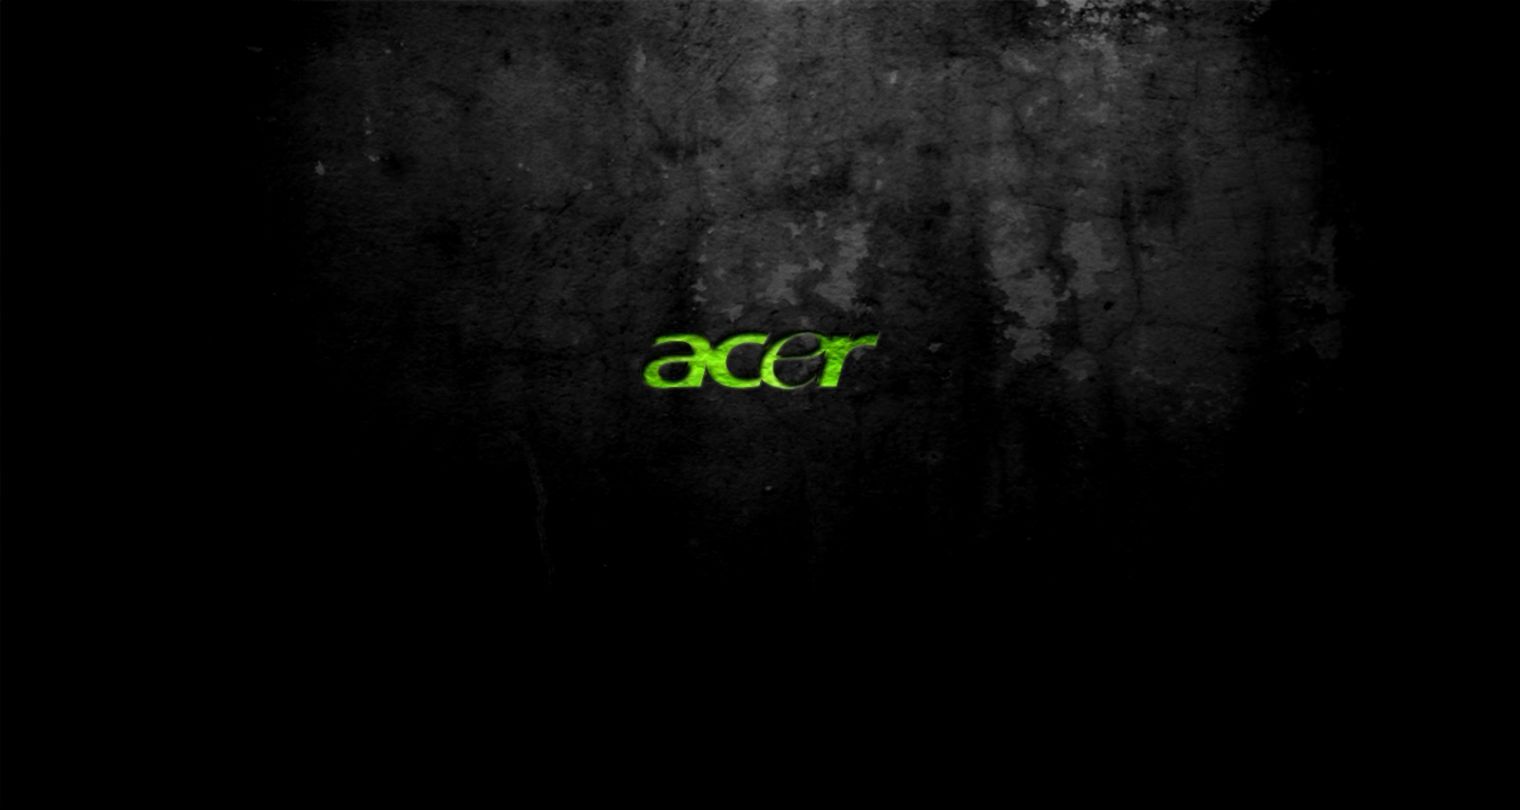 Acer desktop wallpapers